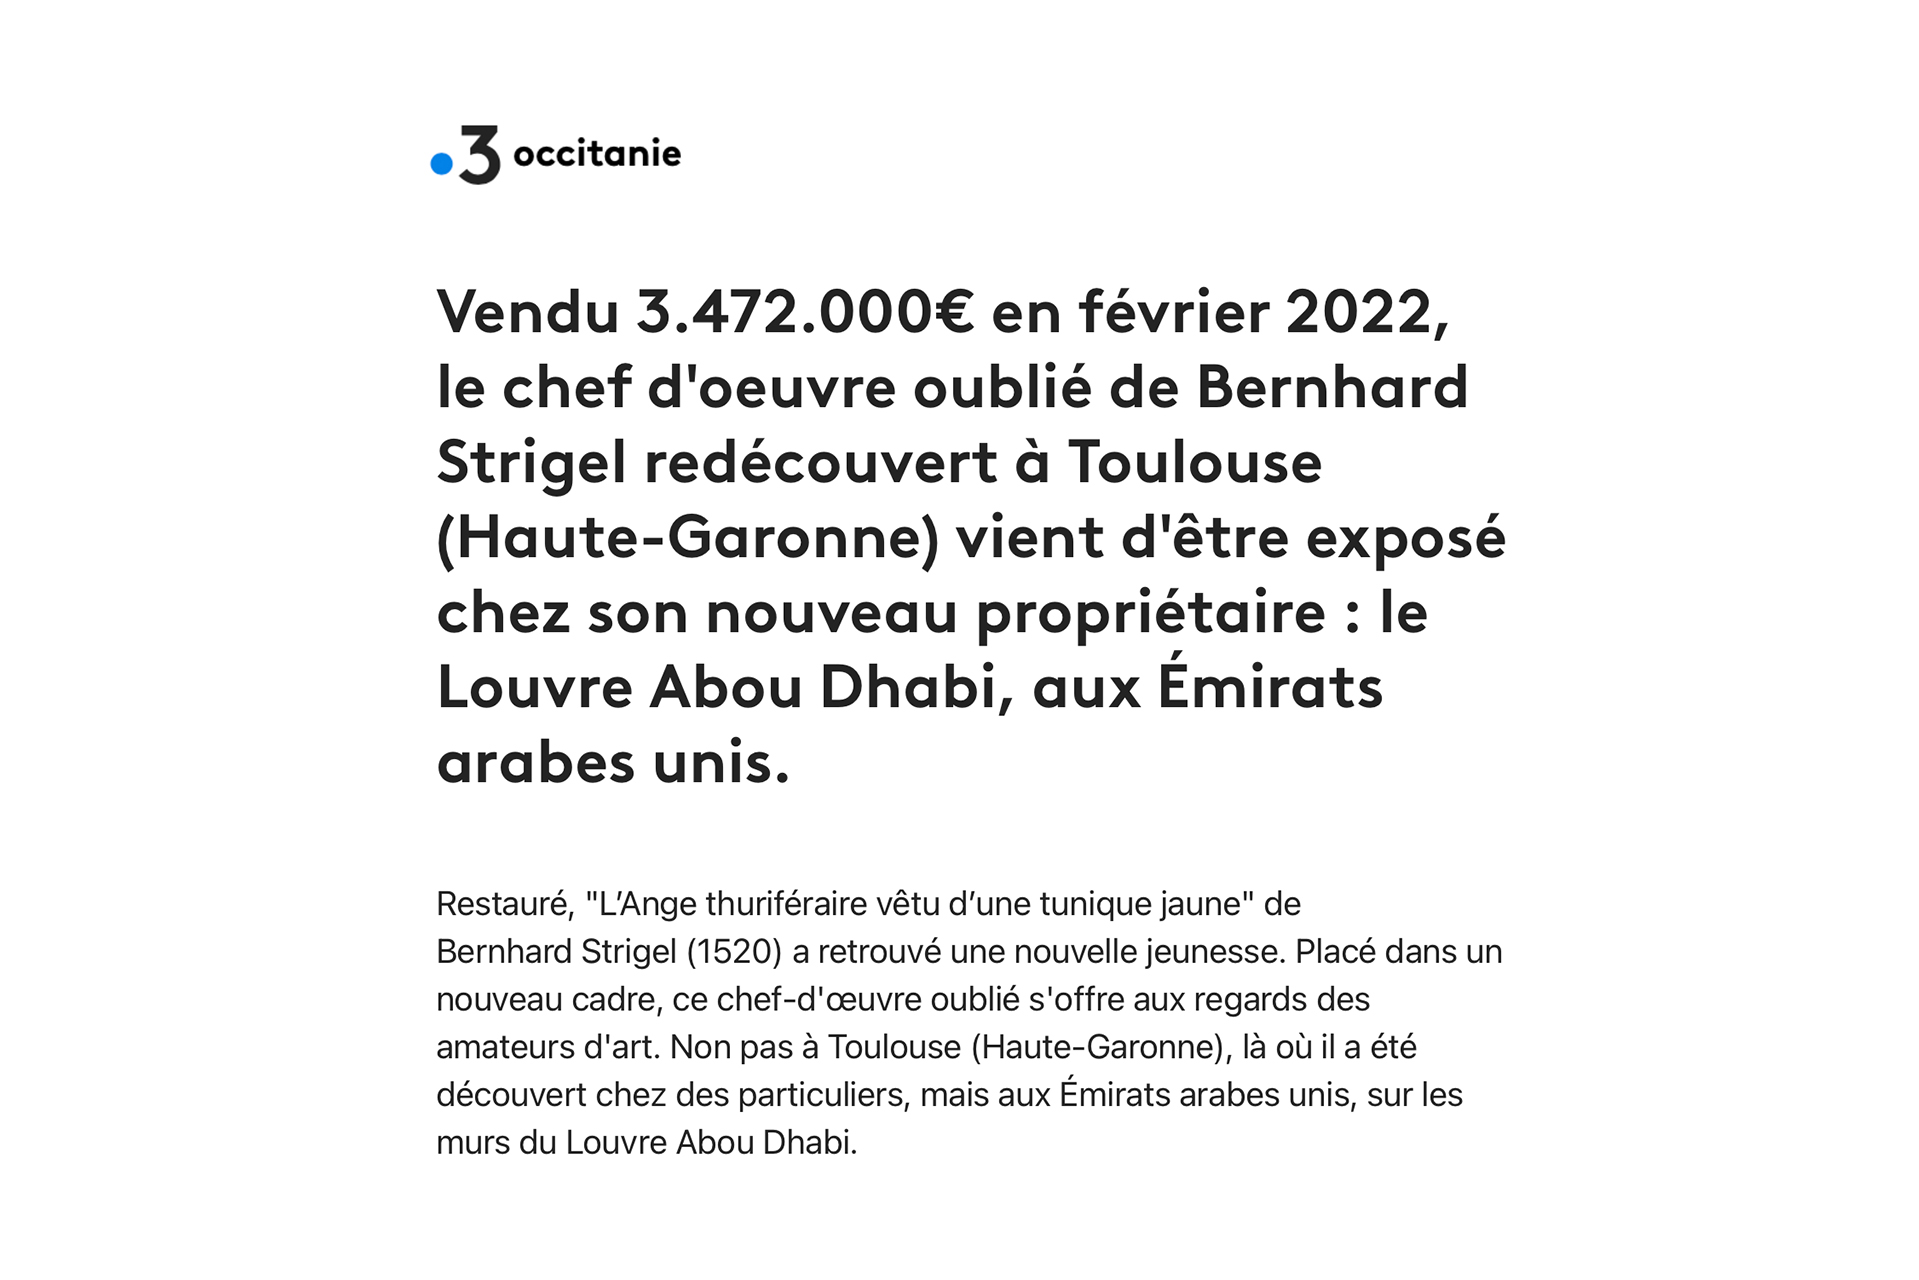 « Toulouse : le chef d’œuvre oublié réapparaît au Louvre Abou Dhabi », 3 janvier 2023